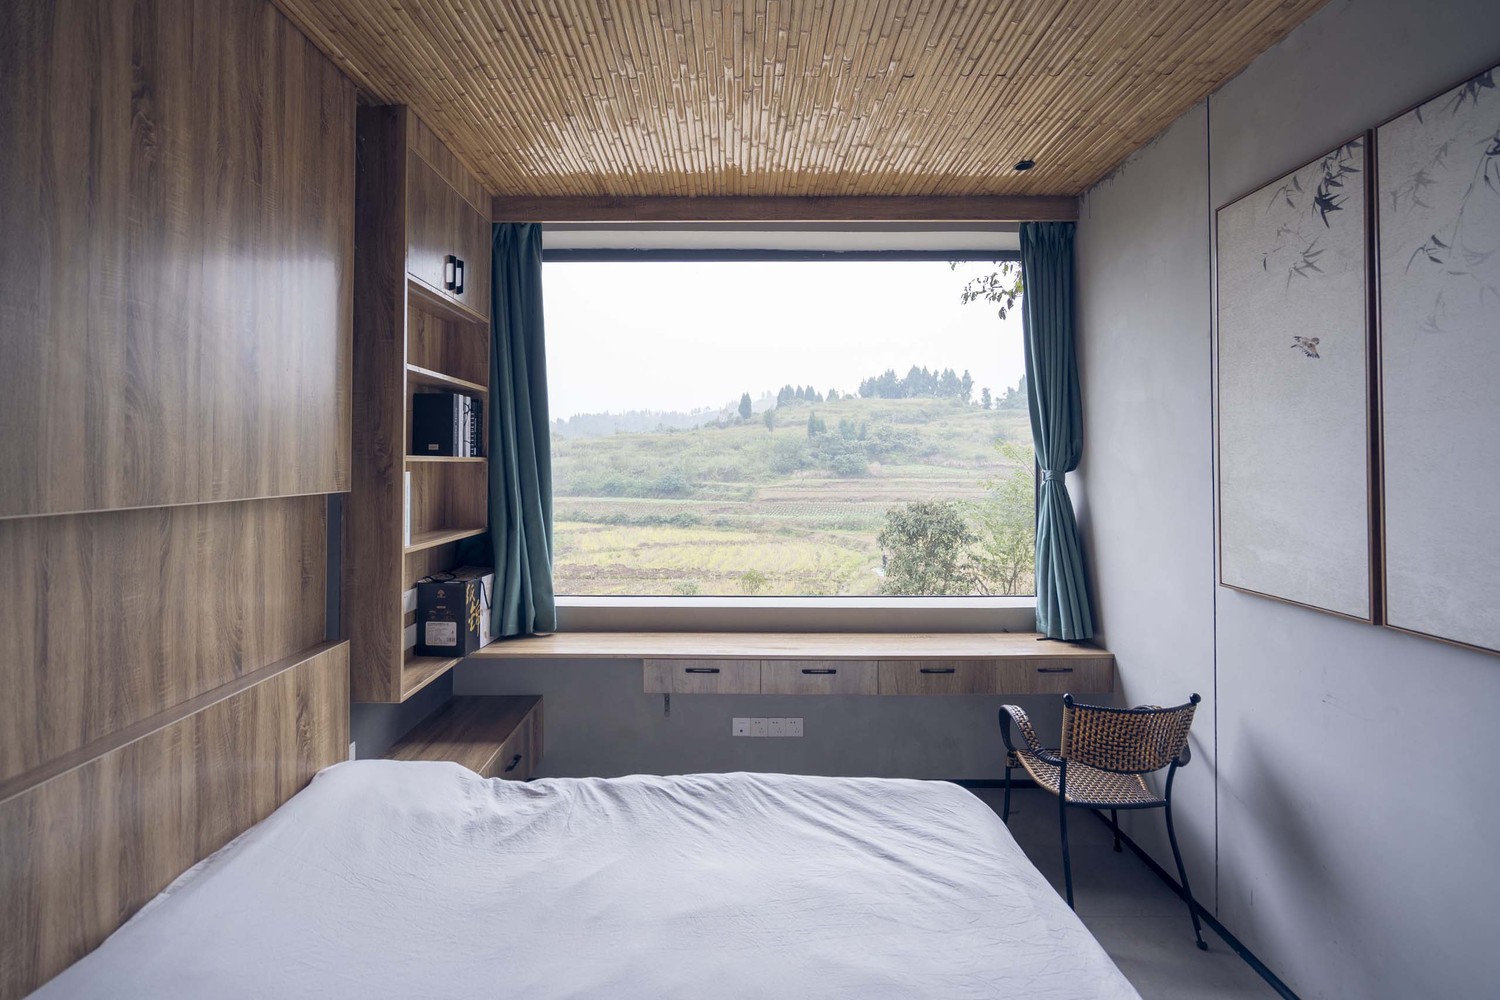 Hình ảnh phòng ngủ với ga gối màu trắng, tủ gỗ, cửa sổ kính nhìn ra núi rừng